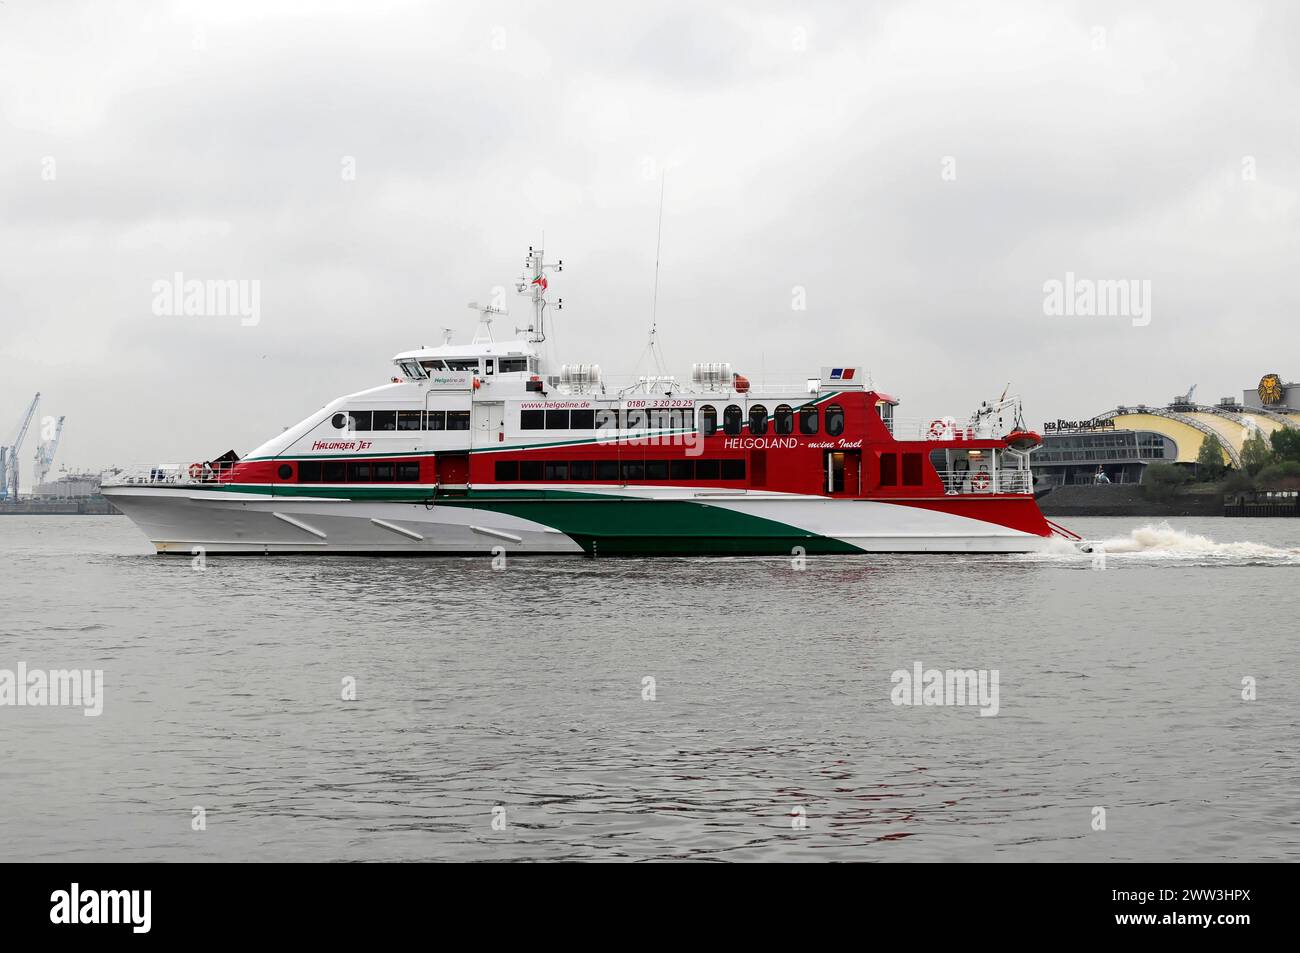 Catamaran rouge et blanc sur des eaux calmes nommé 'Halunder Jet', Hambourg, ville hanséatique de Hambourg, Allemagne Banque D'Images